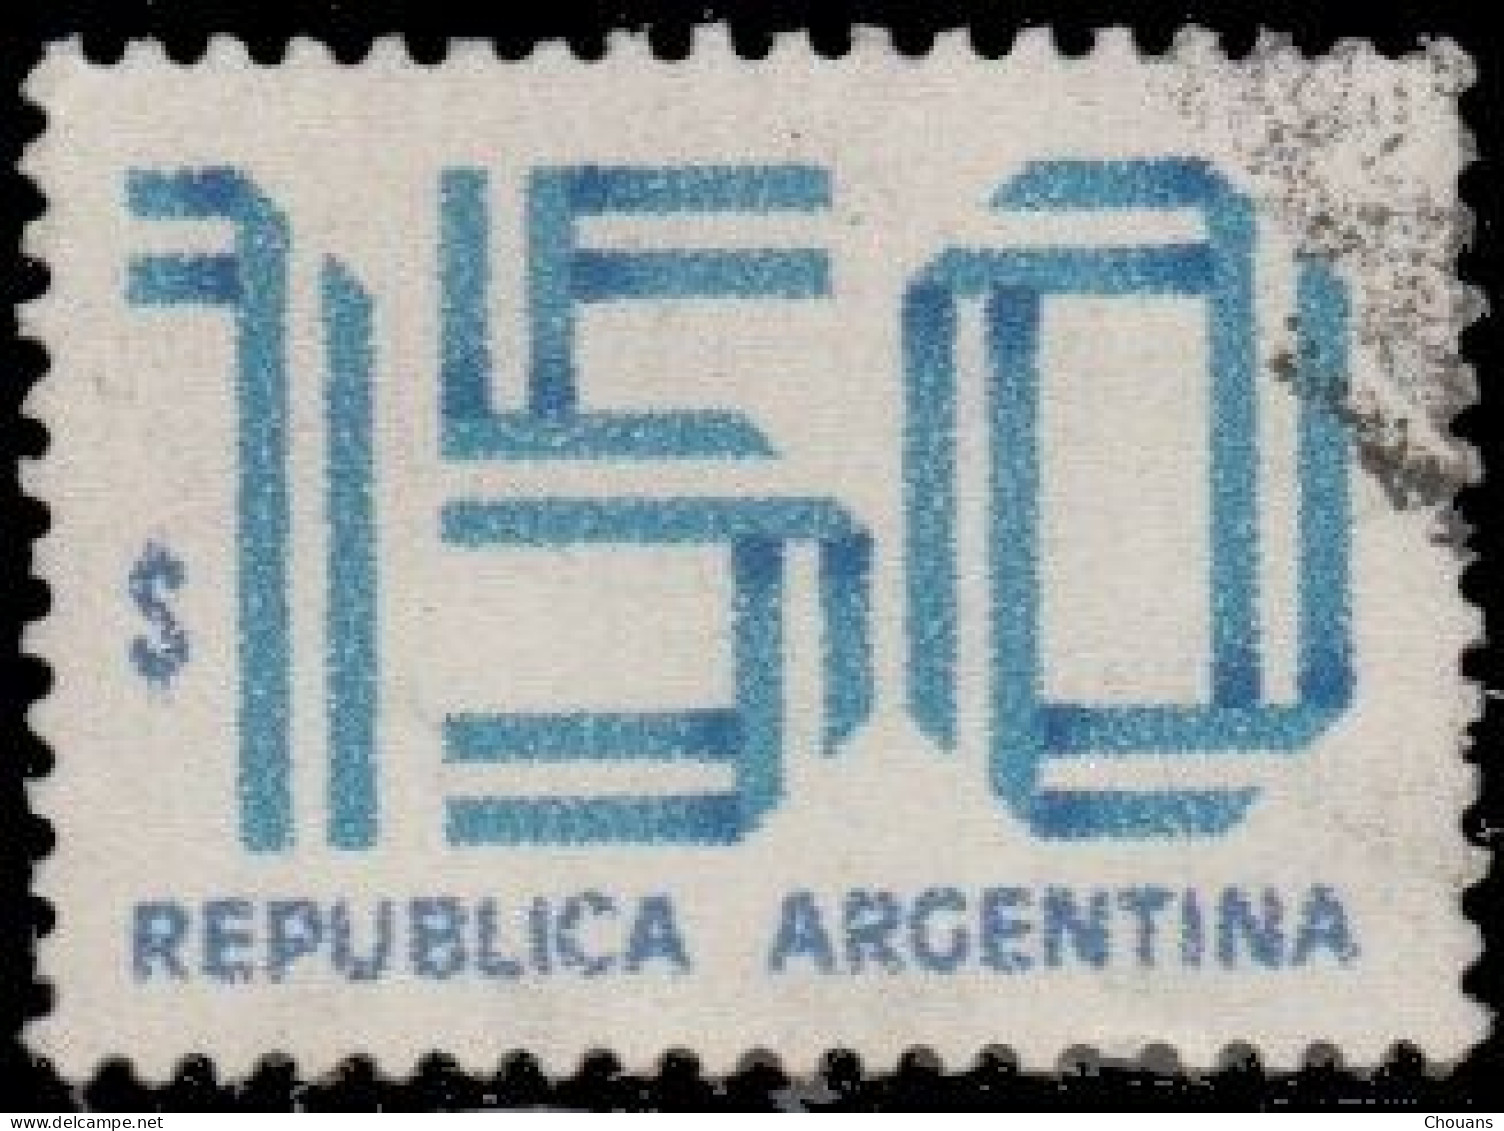 Argentine 1978. ~ YT 1128 +1129x4 +1130x9 + 1132x9 + 1133x2 + 1135 + 1136x9 + 1138x8  (43 V) - Used Stamps